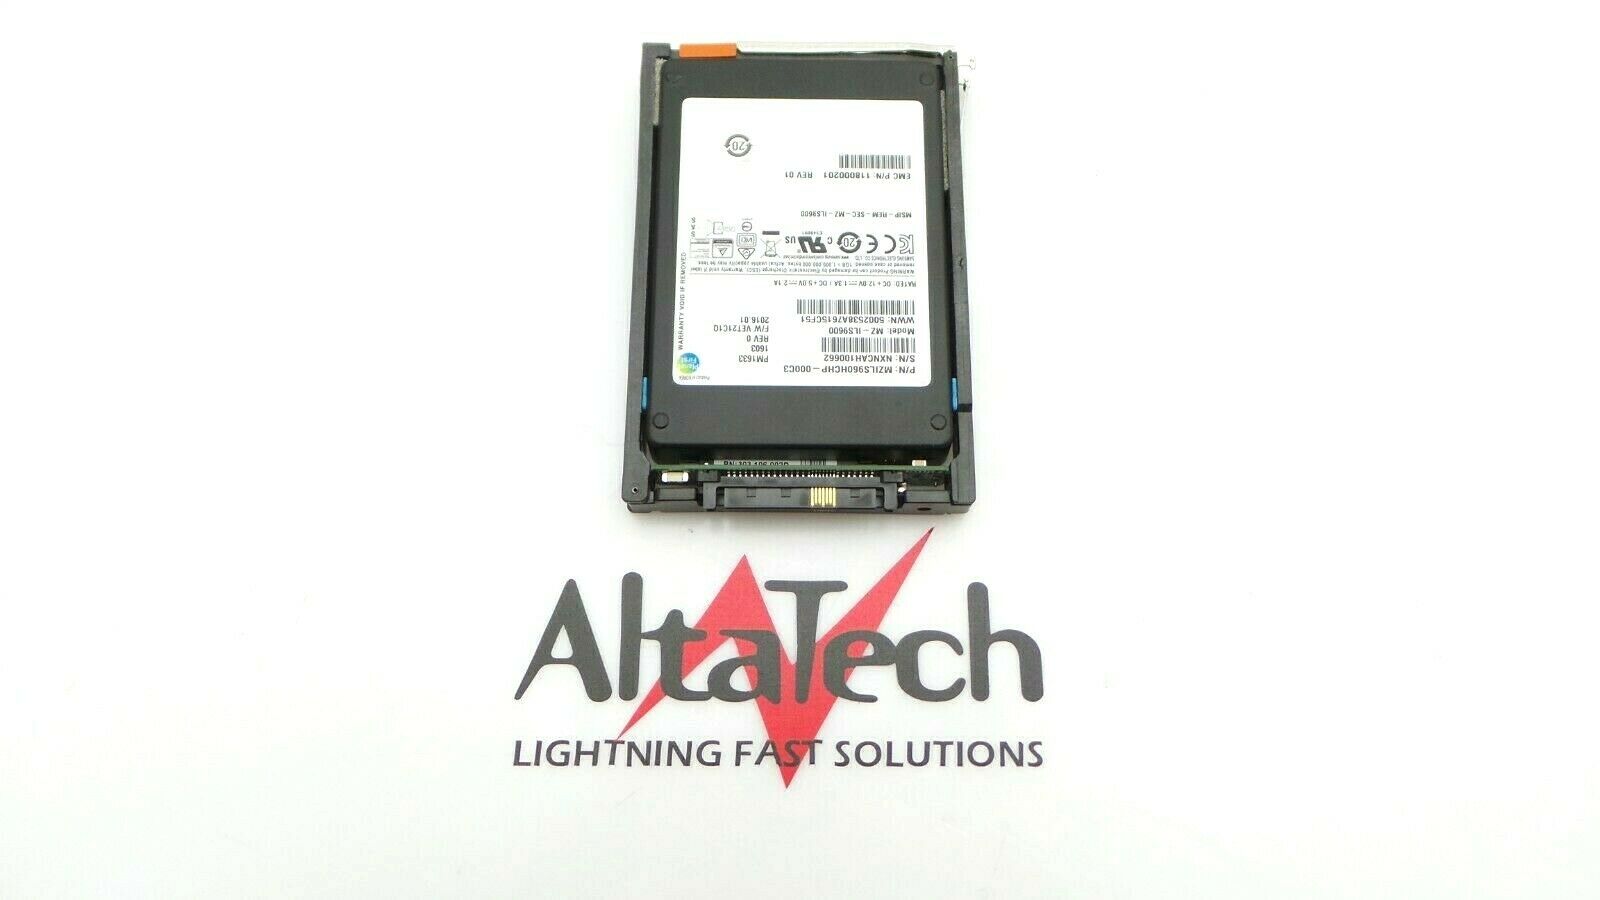 EMC 118000201 960GB SSD SAS 2.5" 12G, Used